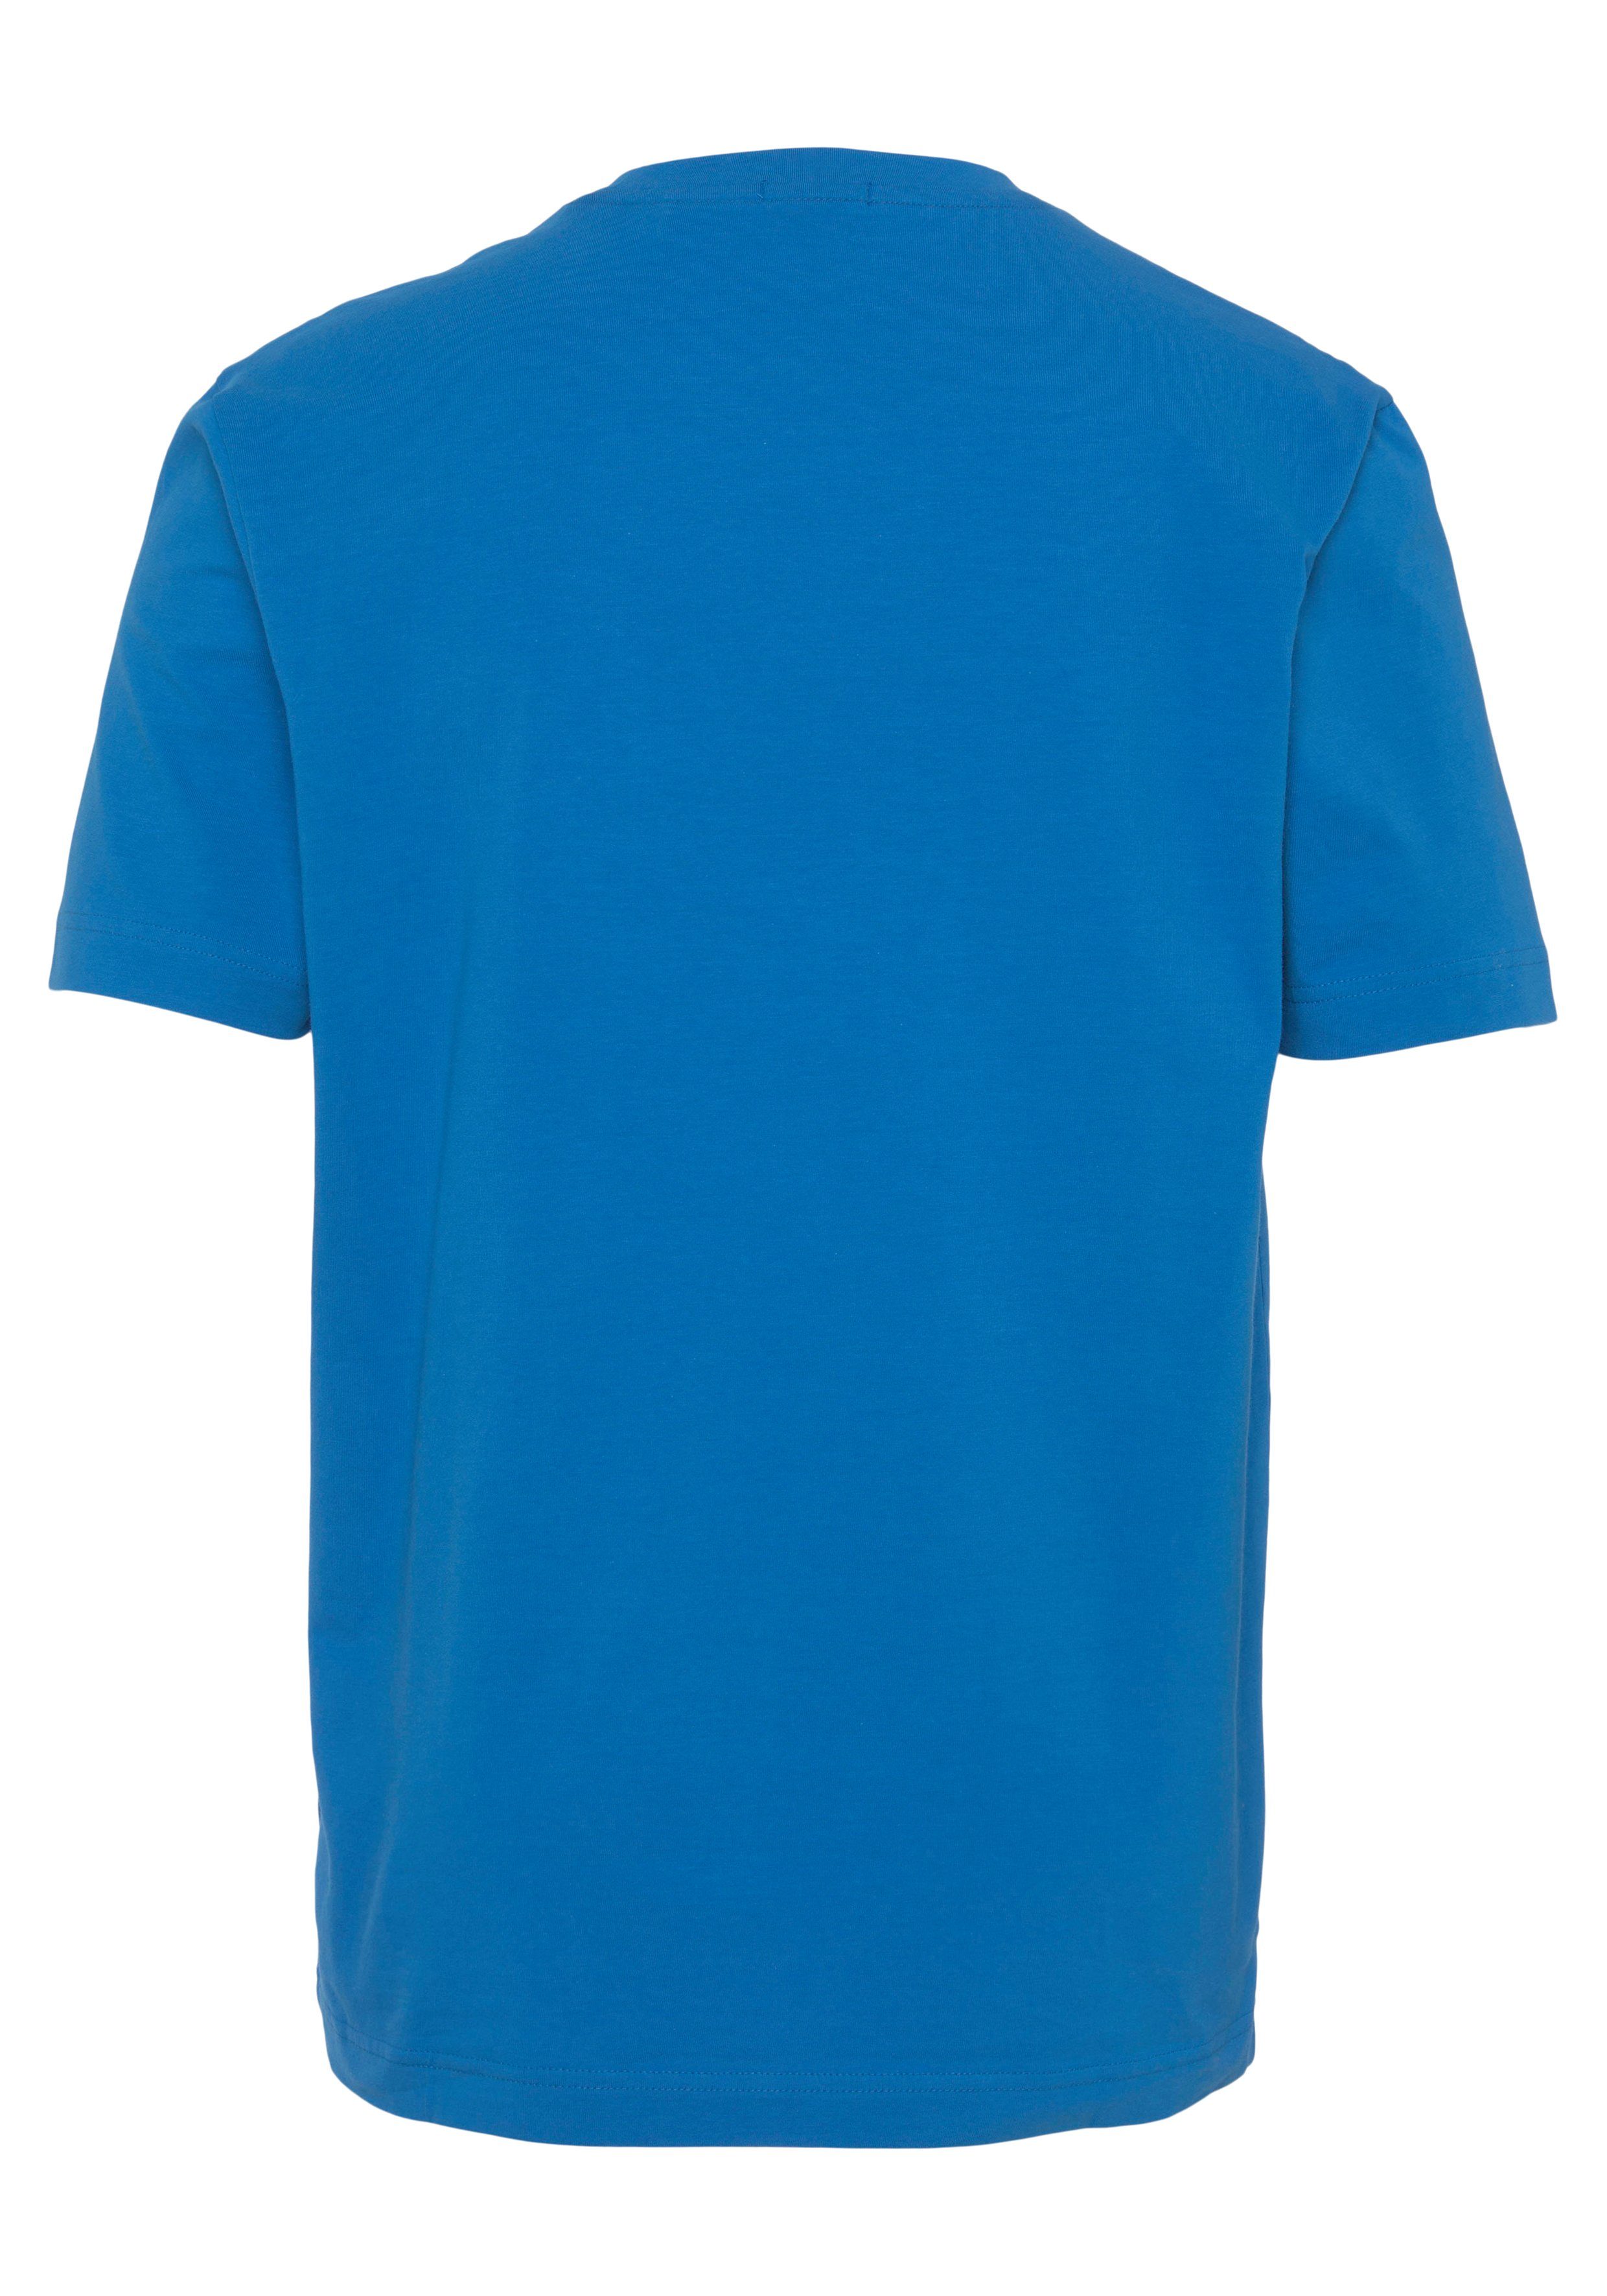 BOSS ORANGE open mit BOSS-Logodruck TChup Kurzarmshirt auf Brust der blue